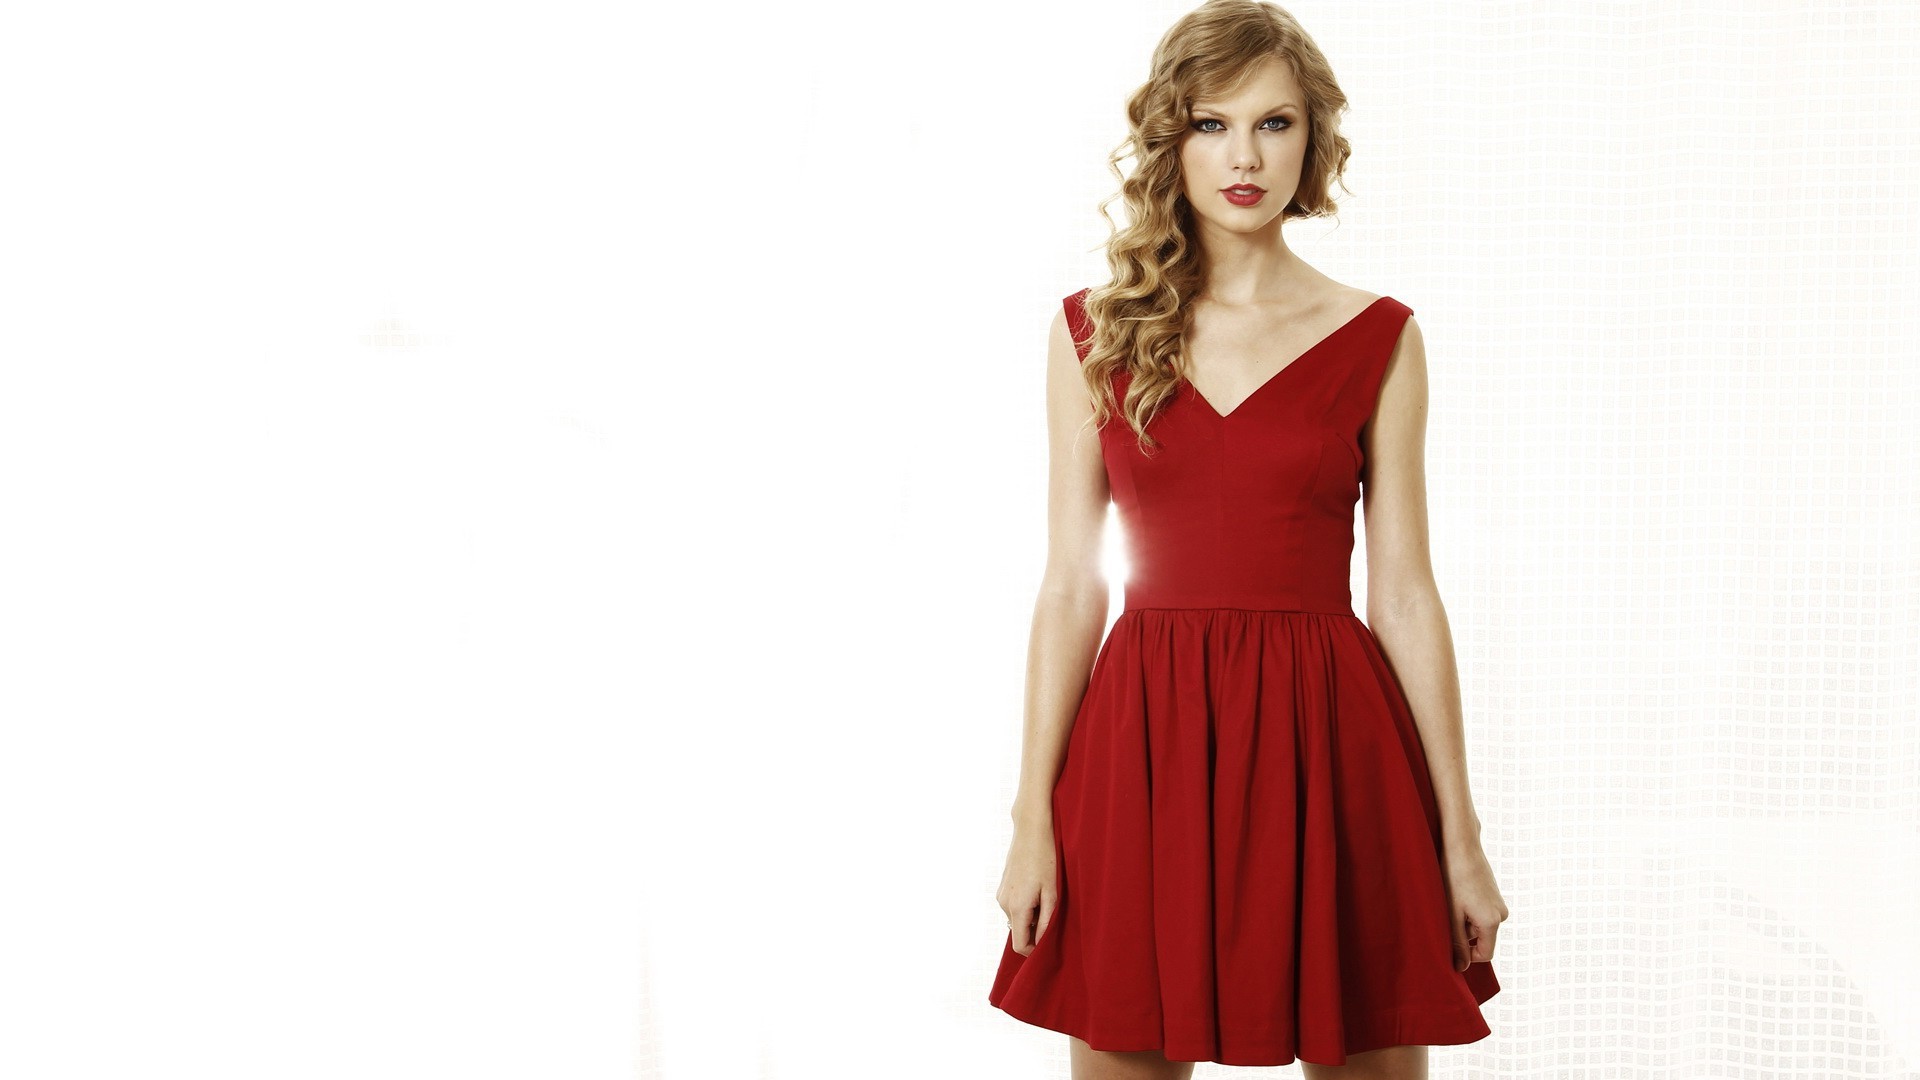 Taylor Swift, Celebrity, Blonde, Singer Wallpaper